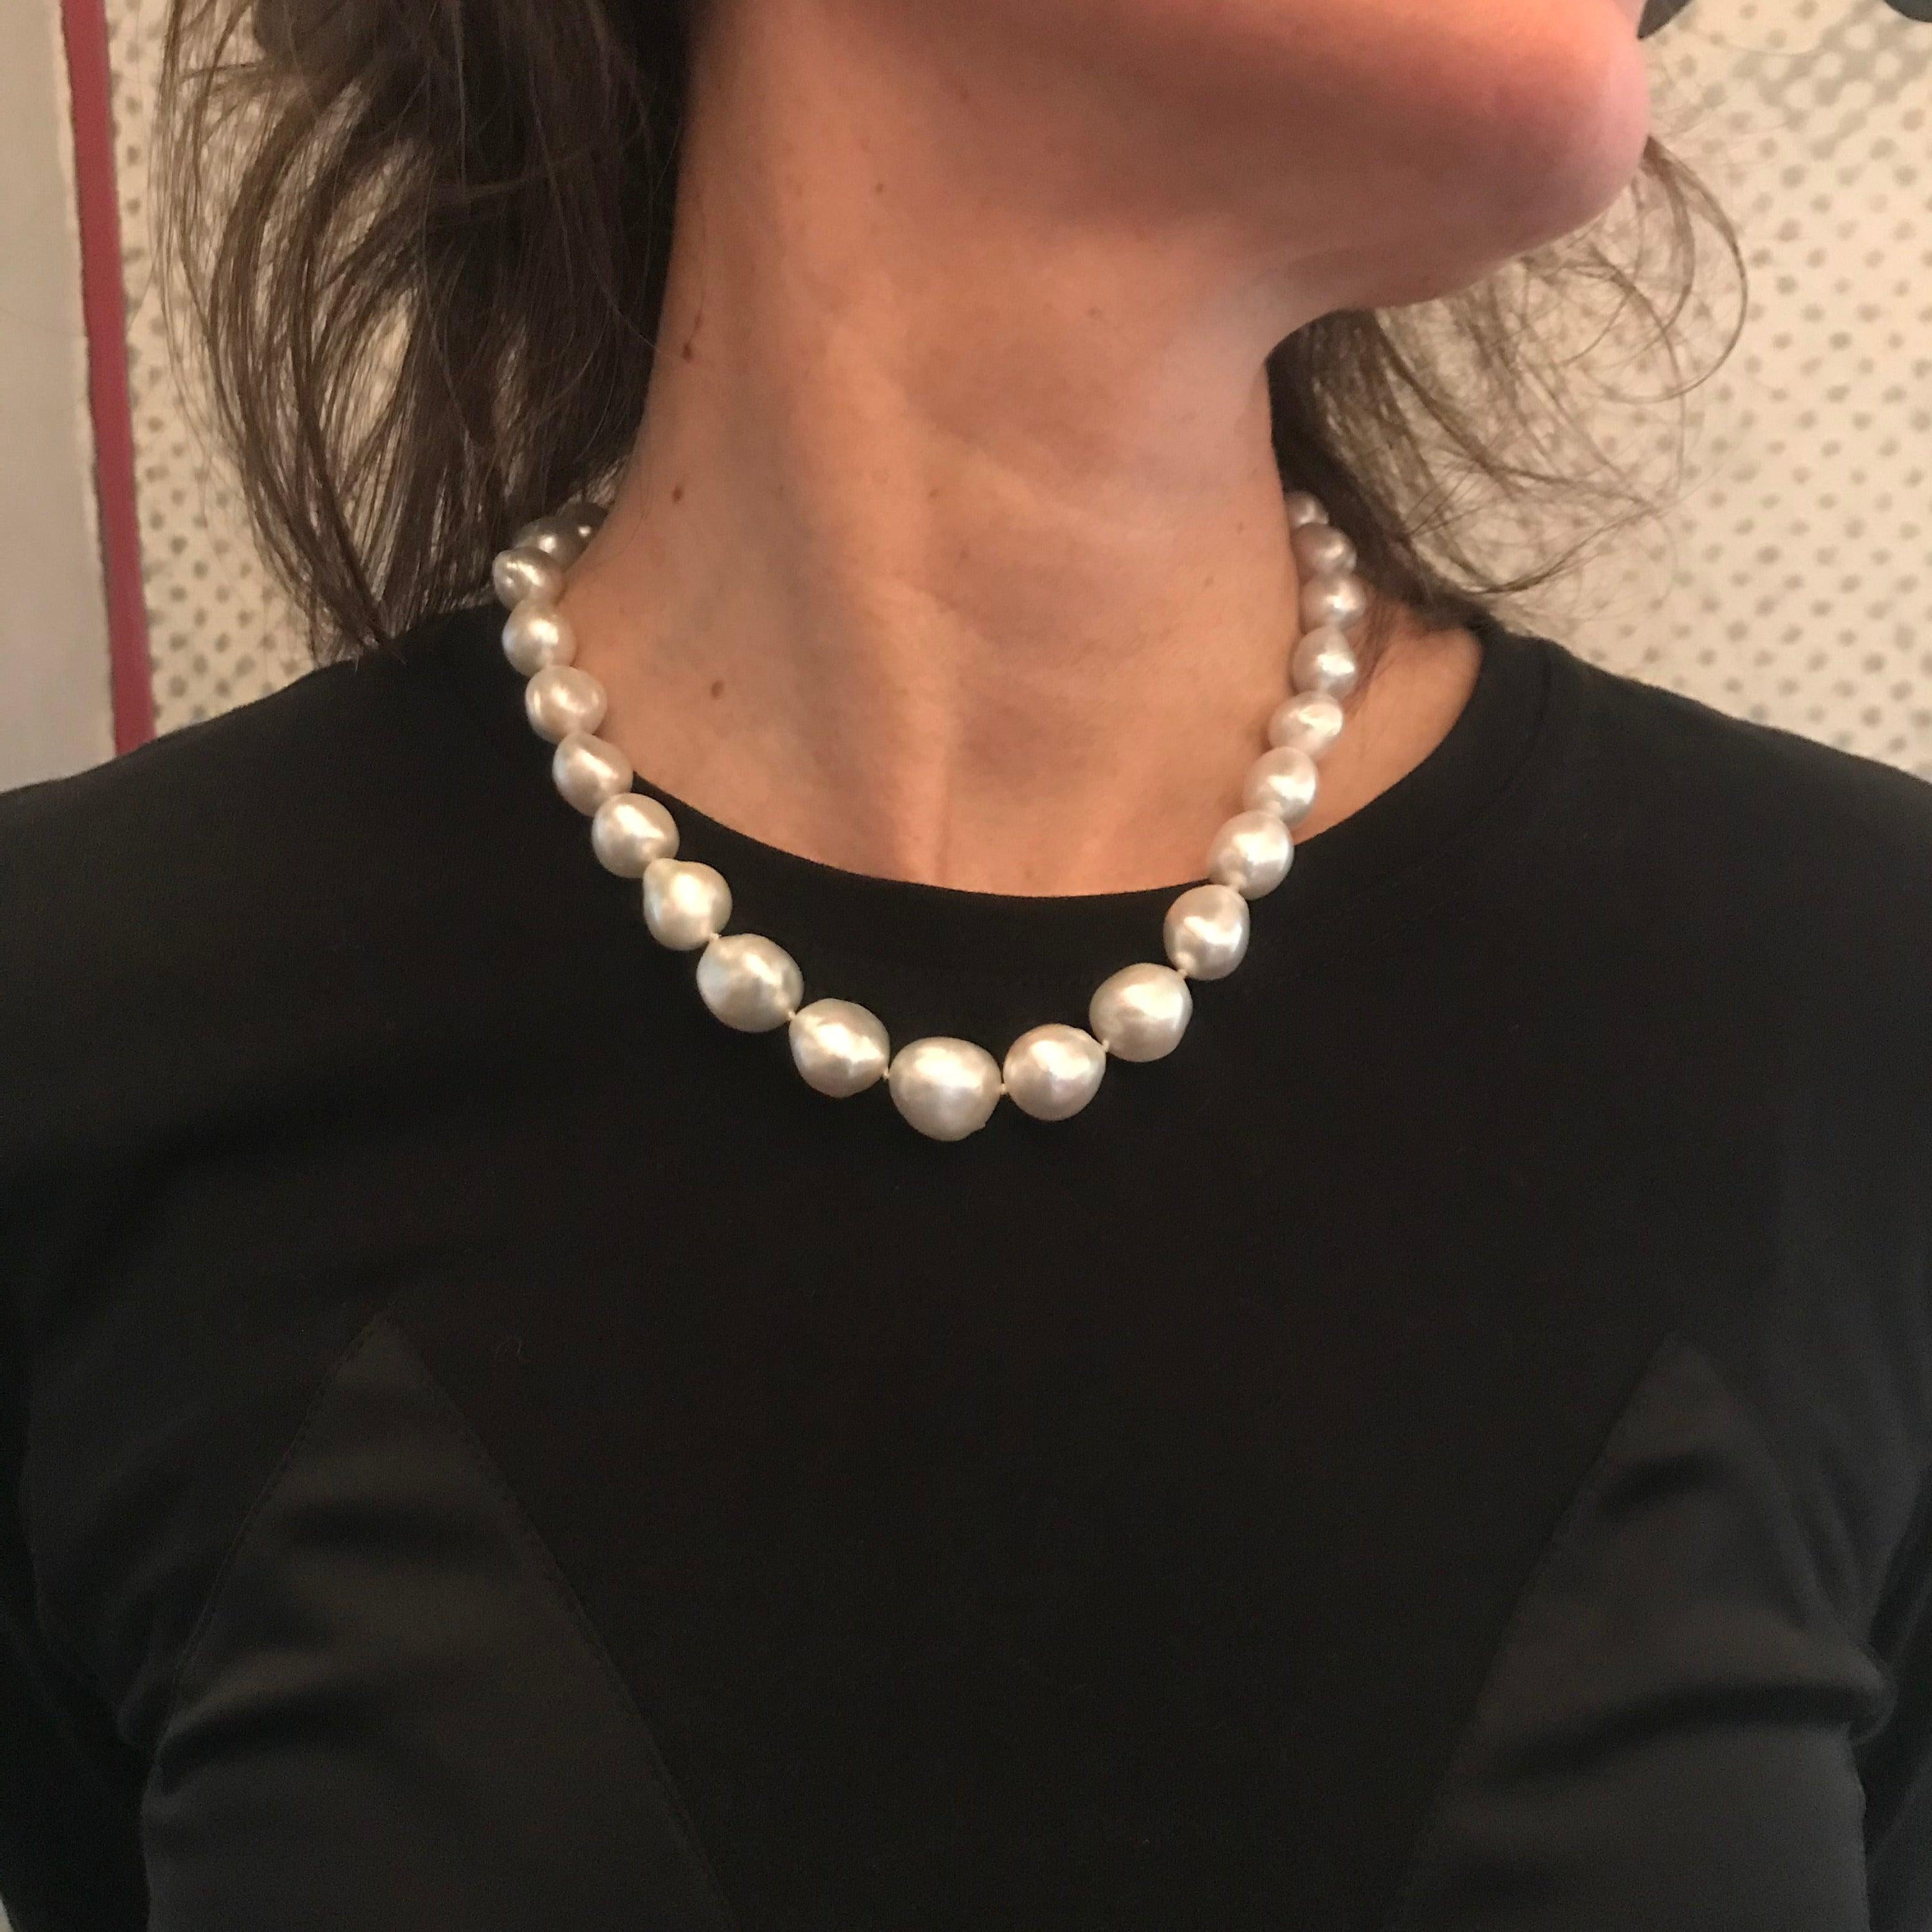 Tout le monde devrait avoir un collier de perles dans sa boîte à bijoux, surtout lorsqu'il est accompagné de perles baroques nobles et brillantes de Southsea avec un fermoir en or jaune 22k surmonté du logo de Colleen B. Rosenblat.